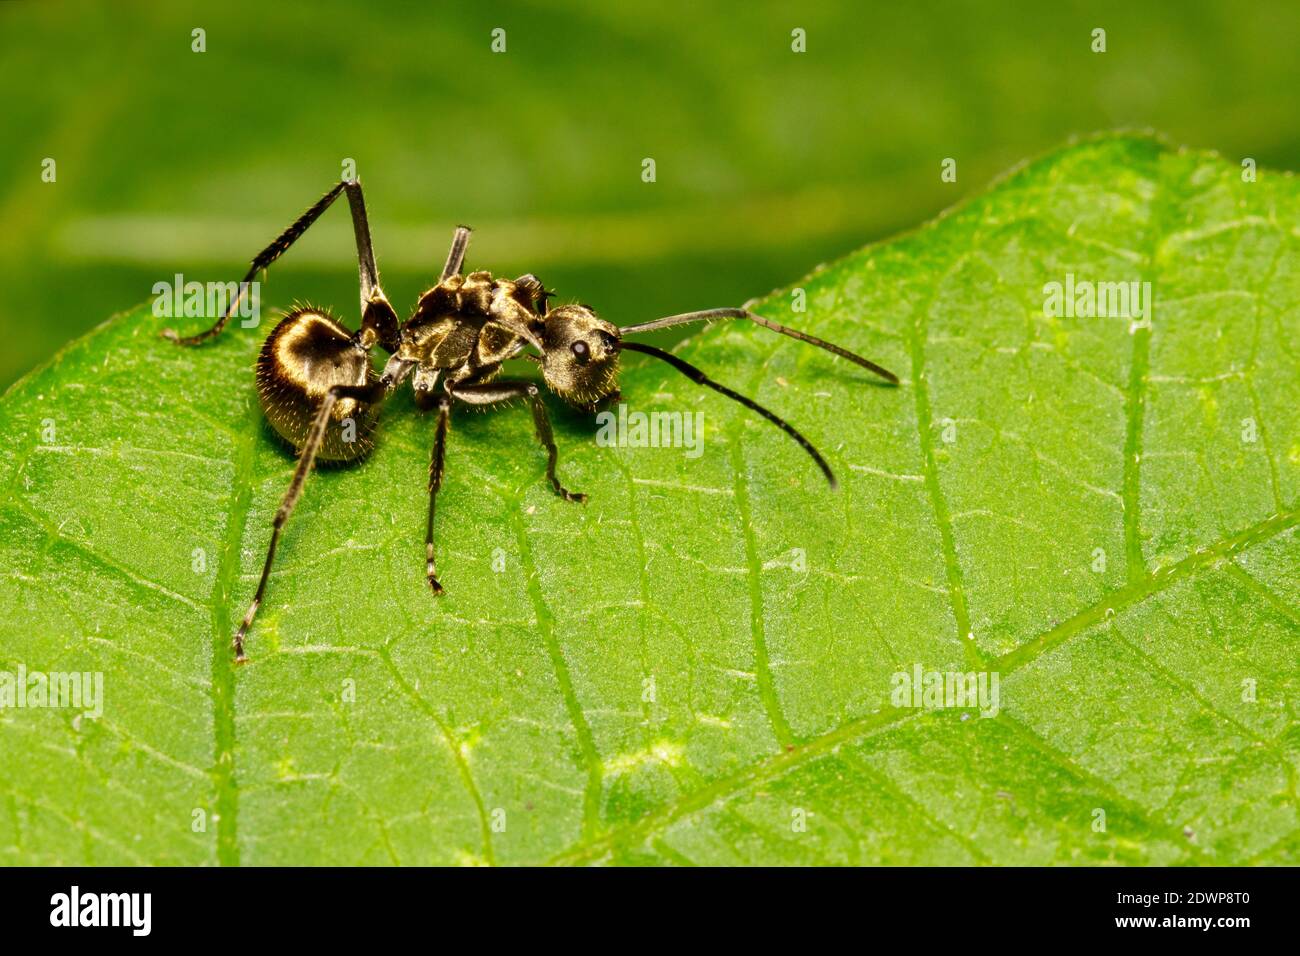 Imagen de una hormiga (zambullidas de Polyrhachis) en hoja verde. Insecto. Animal. Foto de stock